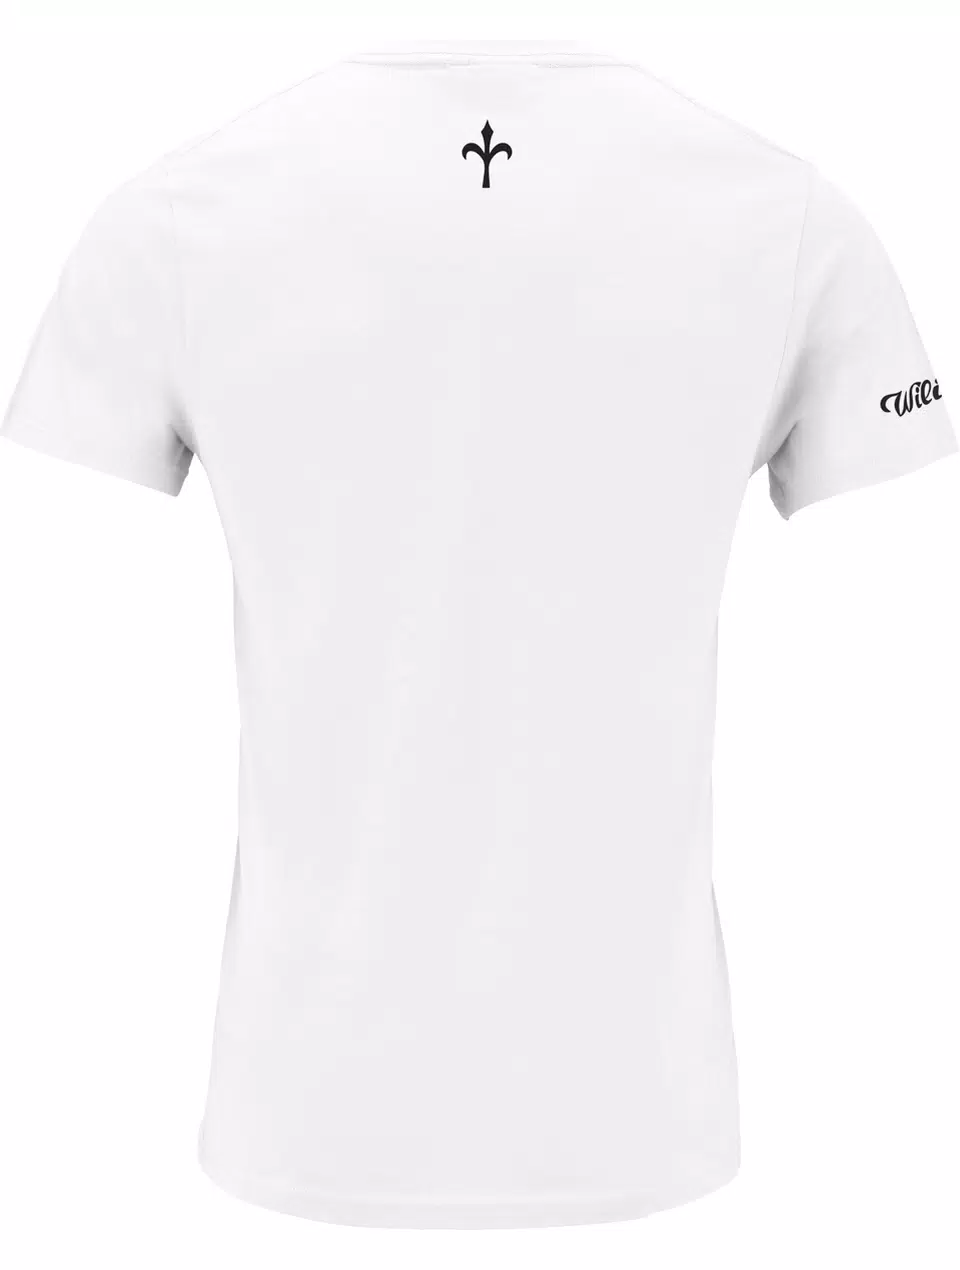 #Raisethebar T-Shirt blanc